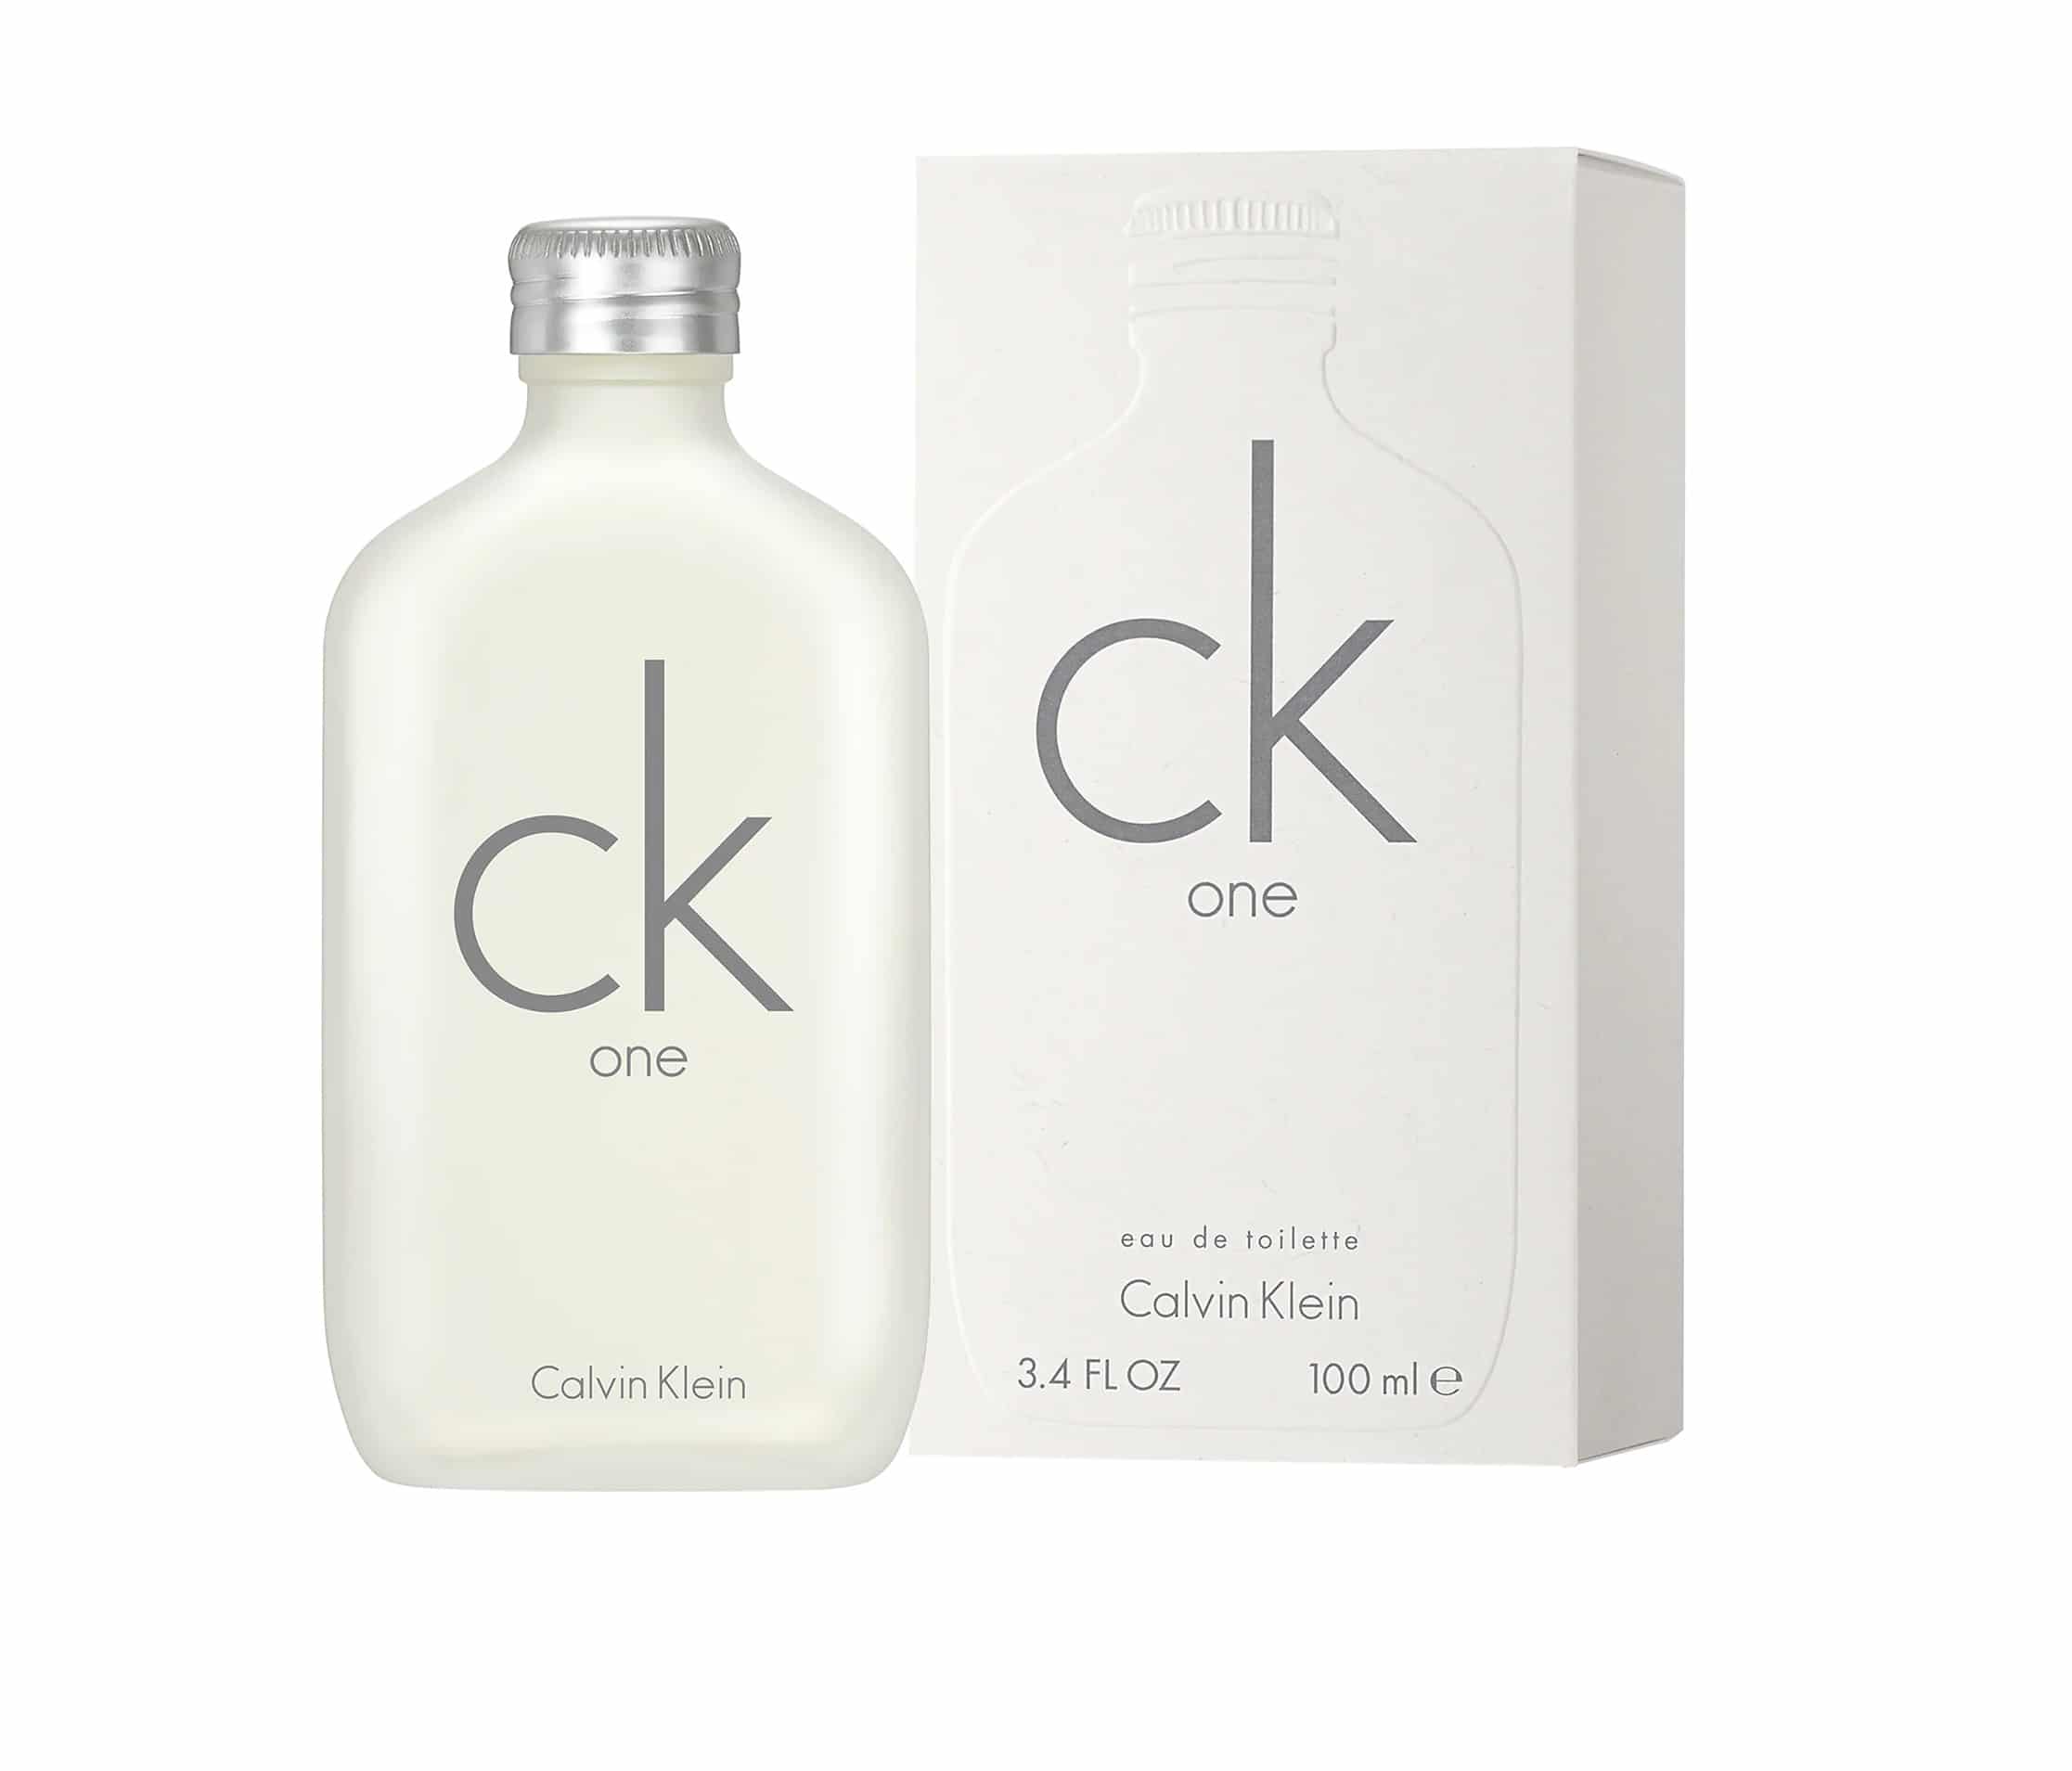 Parfum pas cher CK One de Calvin Klein